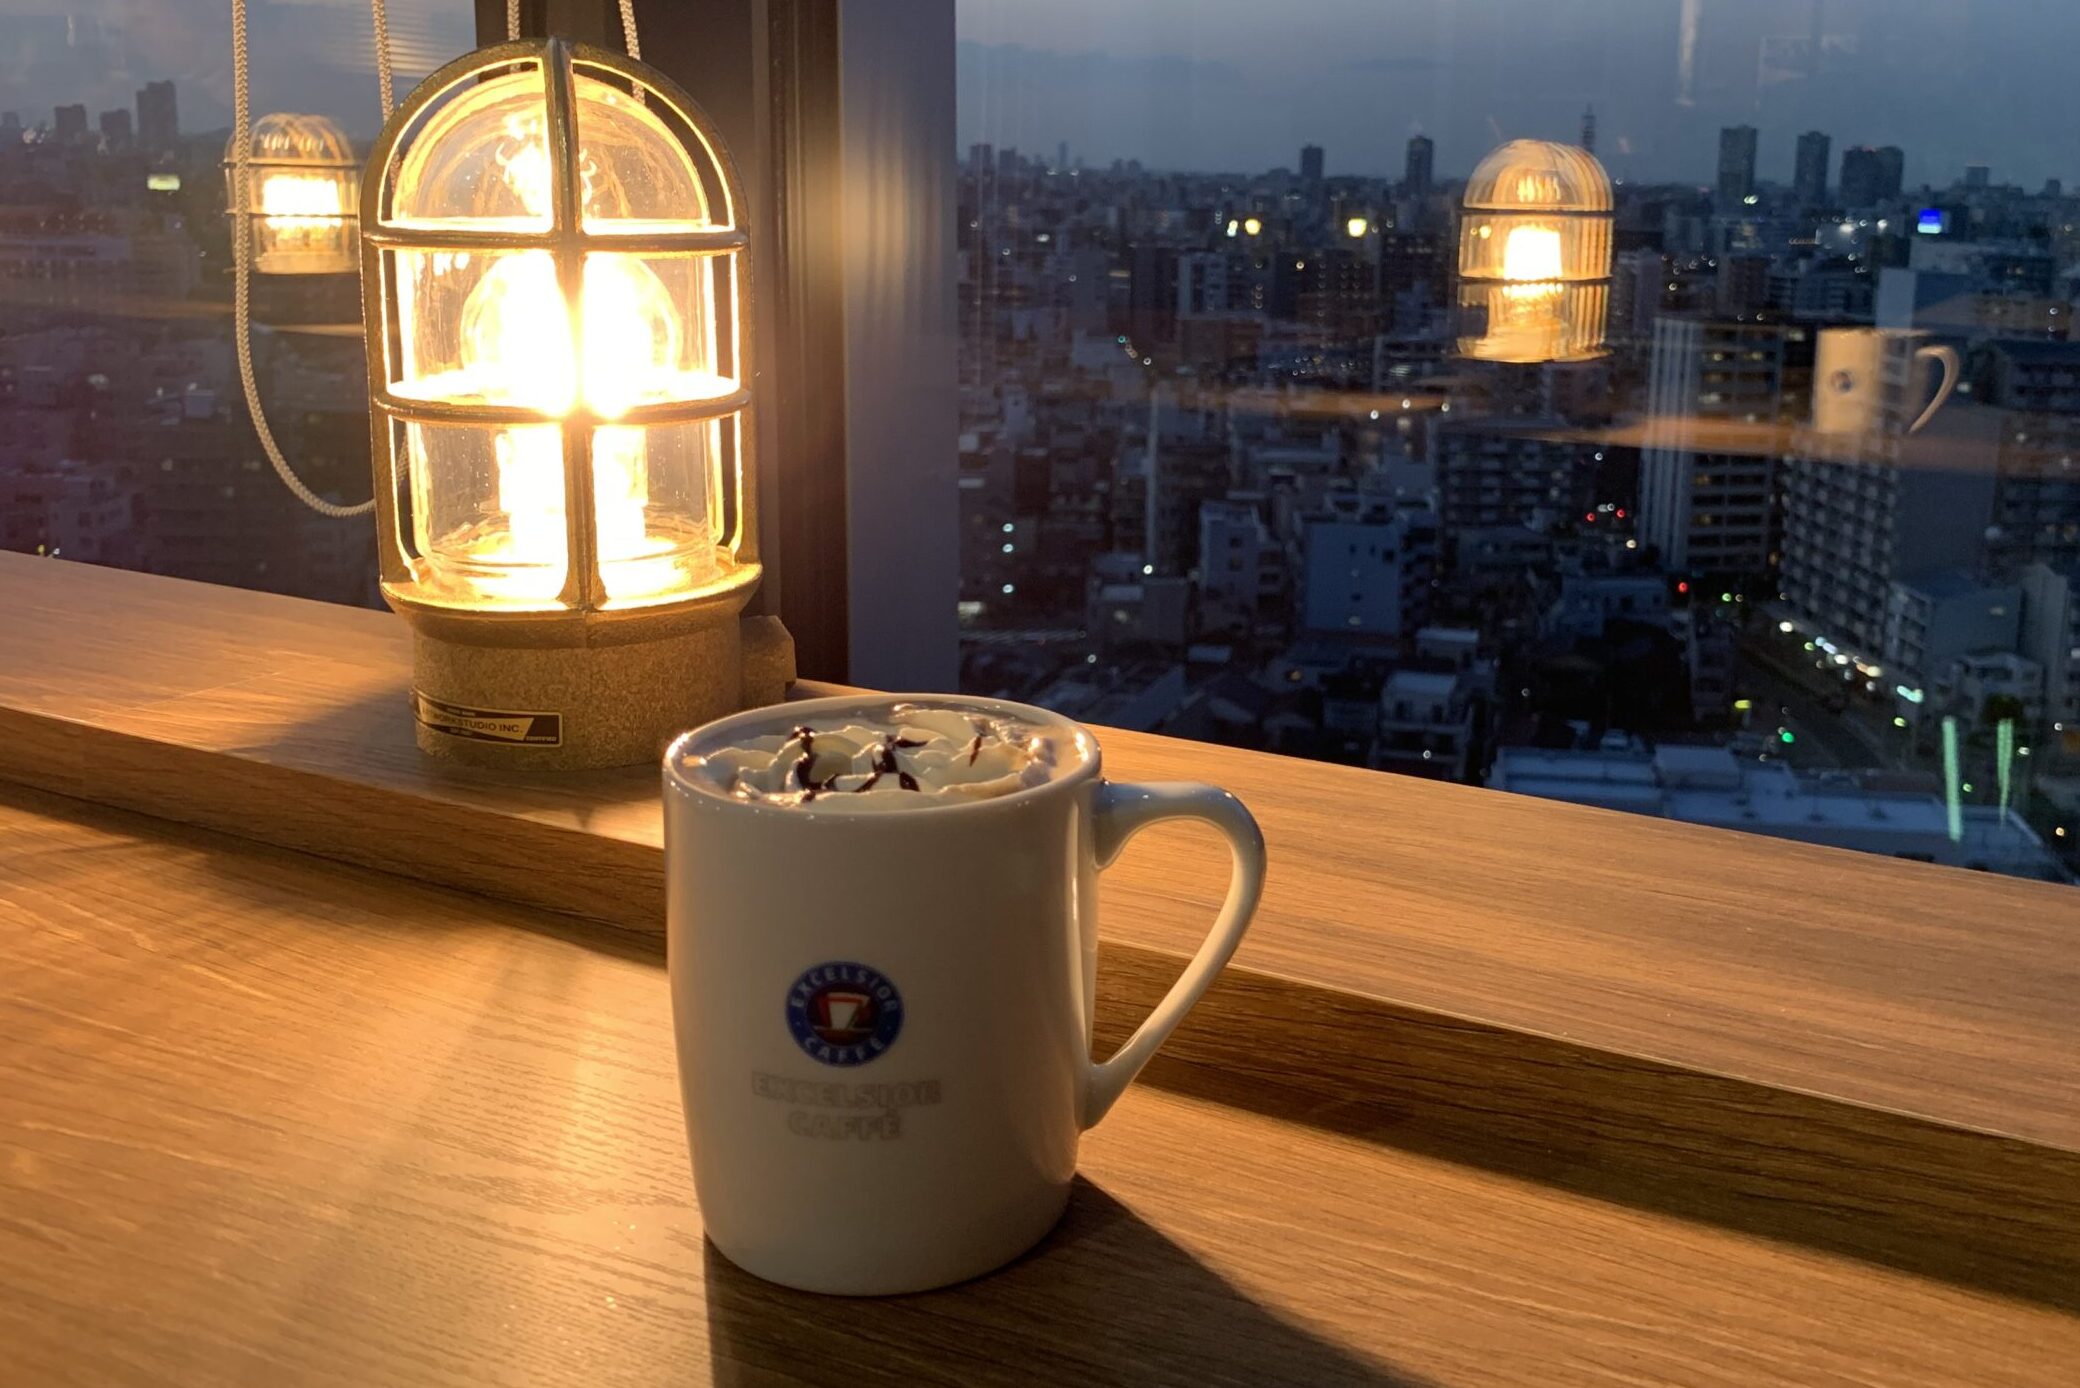 東京スカイツリー駅 押上駅 おすすめの勉強できるカフェ東京スカイツリー駅 押上駅 おすすめの勉強できるカフェ 地味型ノマドワーカーの作り方